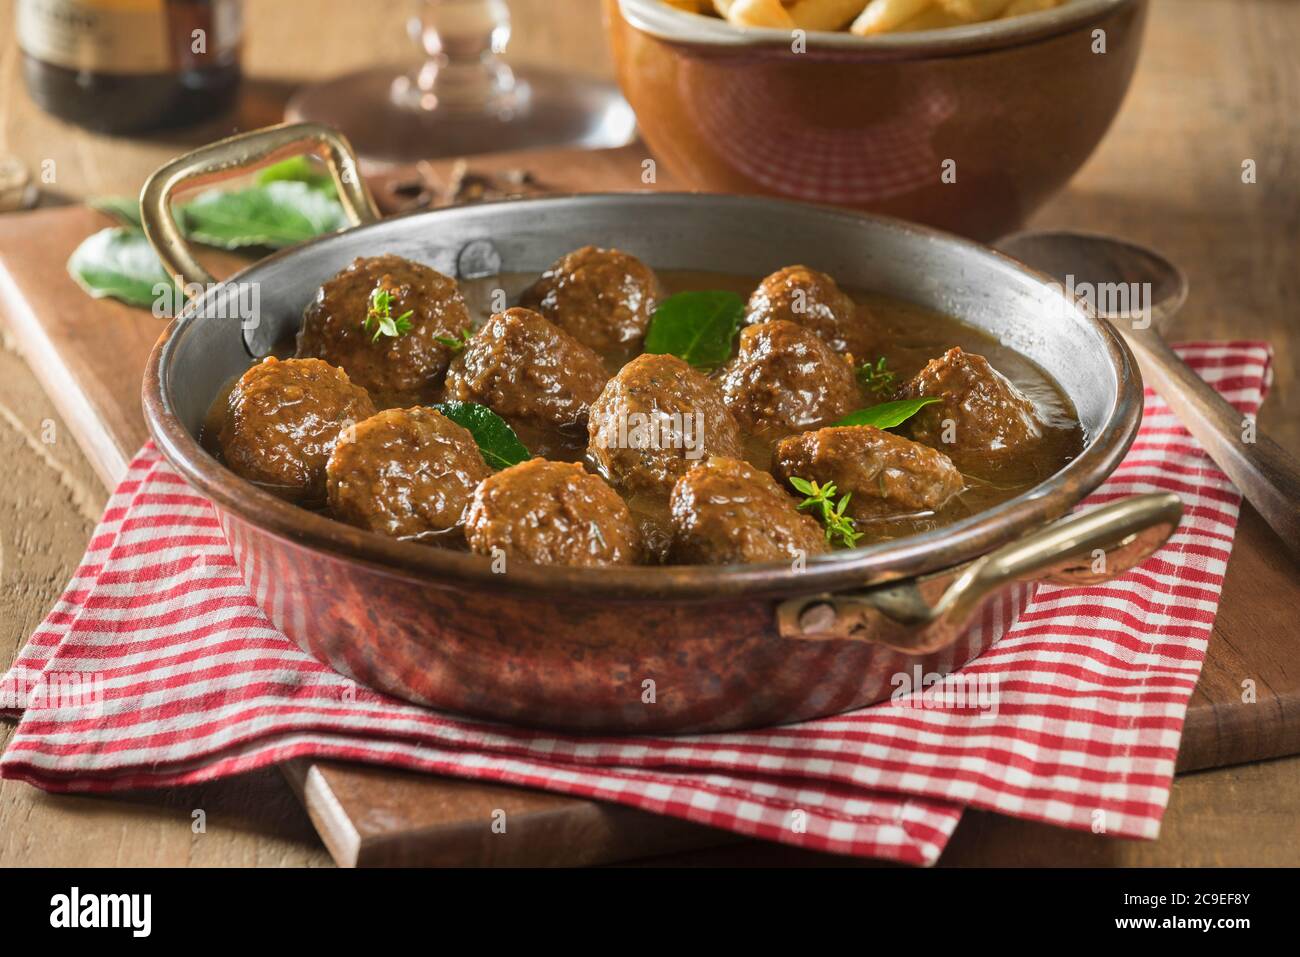 Boulettes Sauce Lapin. Belgian meatballs. Food Belgium Stock Photo